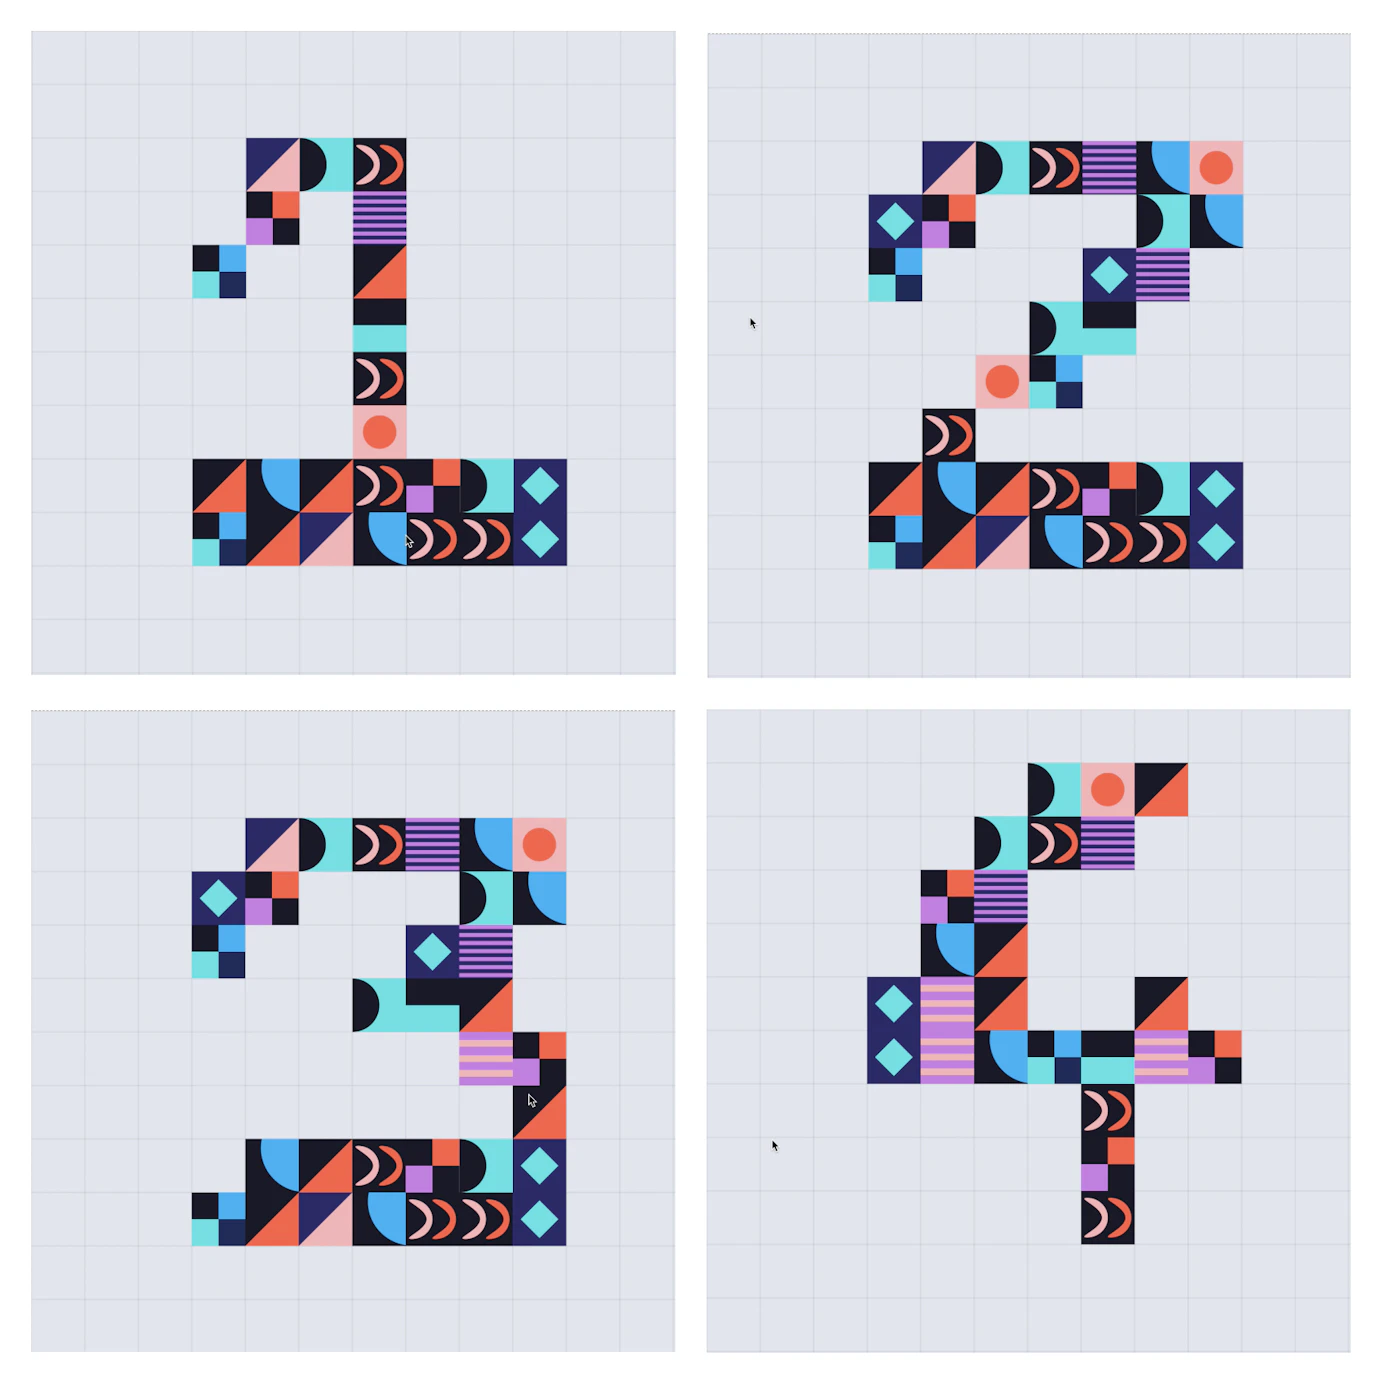 Image numéro 0 du projet number of type  crée par Timothé Joubert